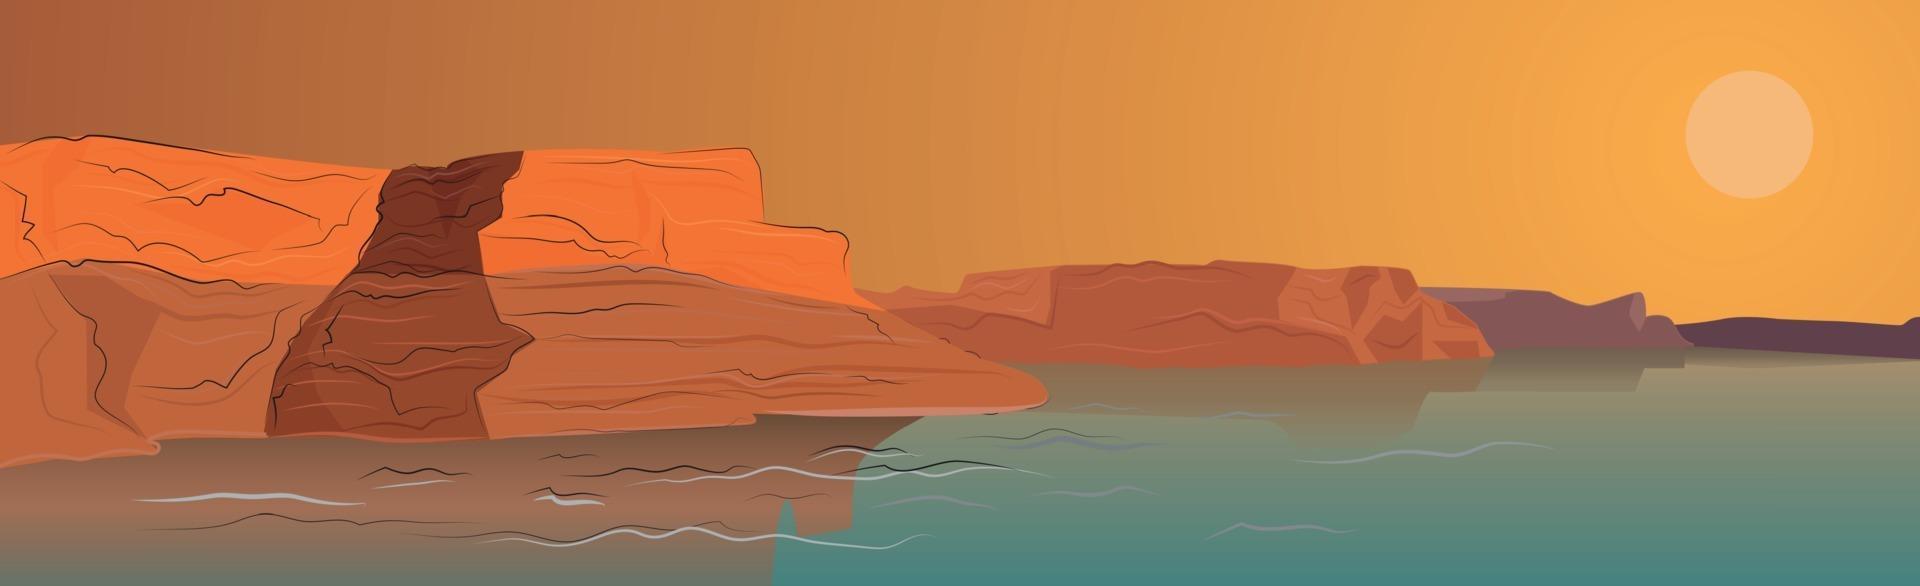 Panoramalandschaft heiße Wüste, Sanddünen - Vektor